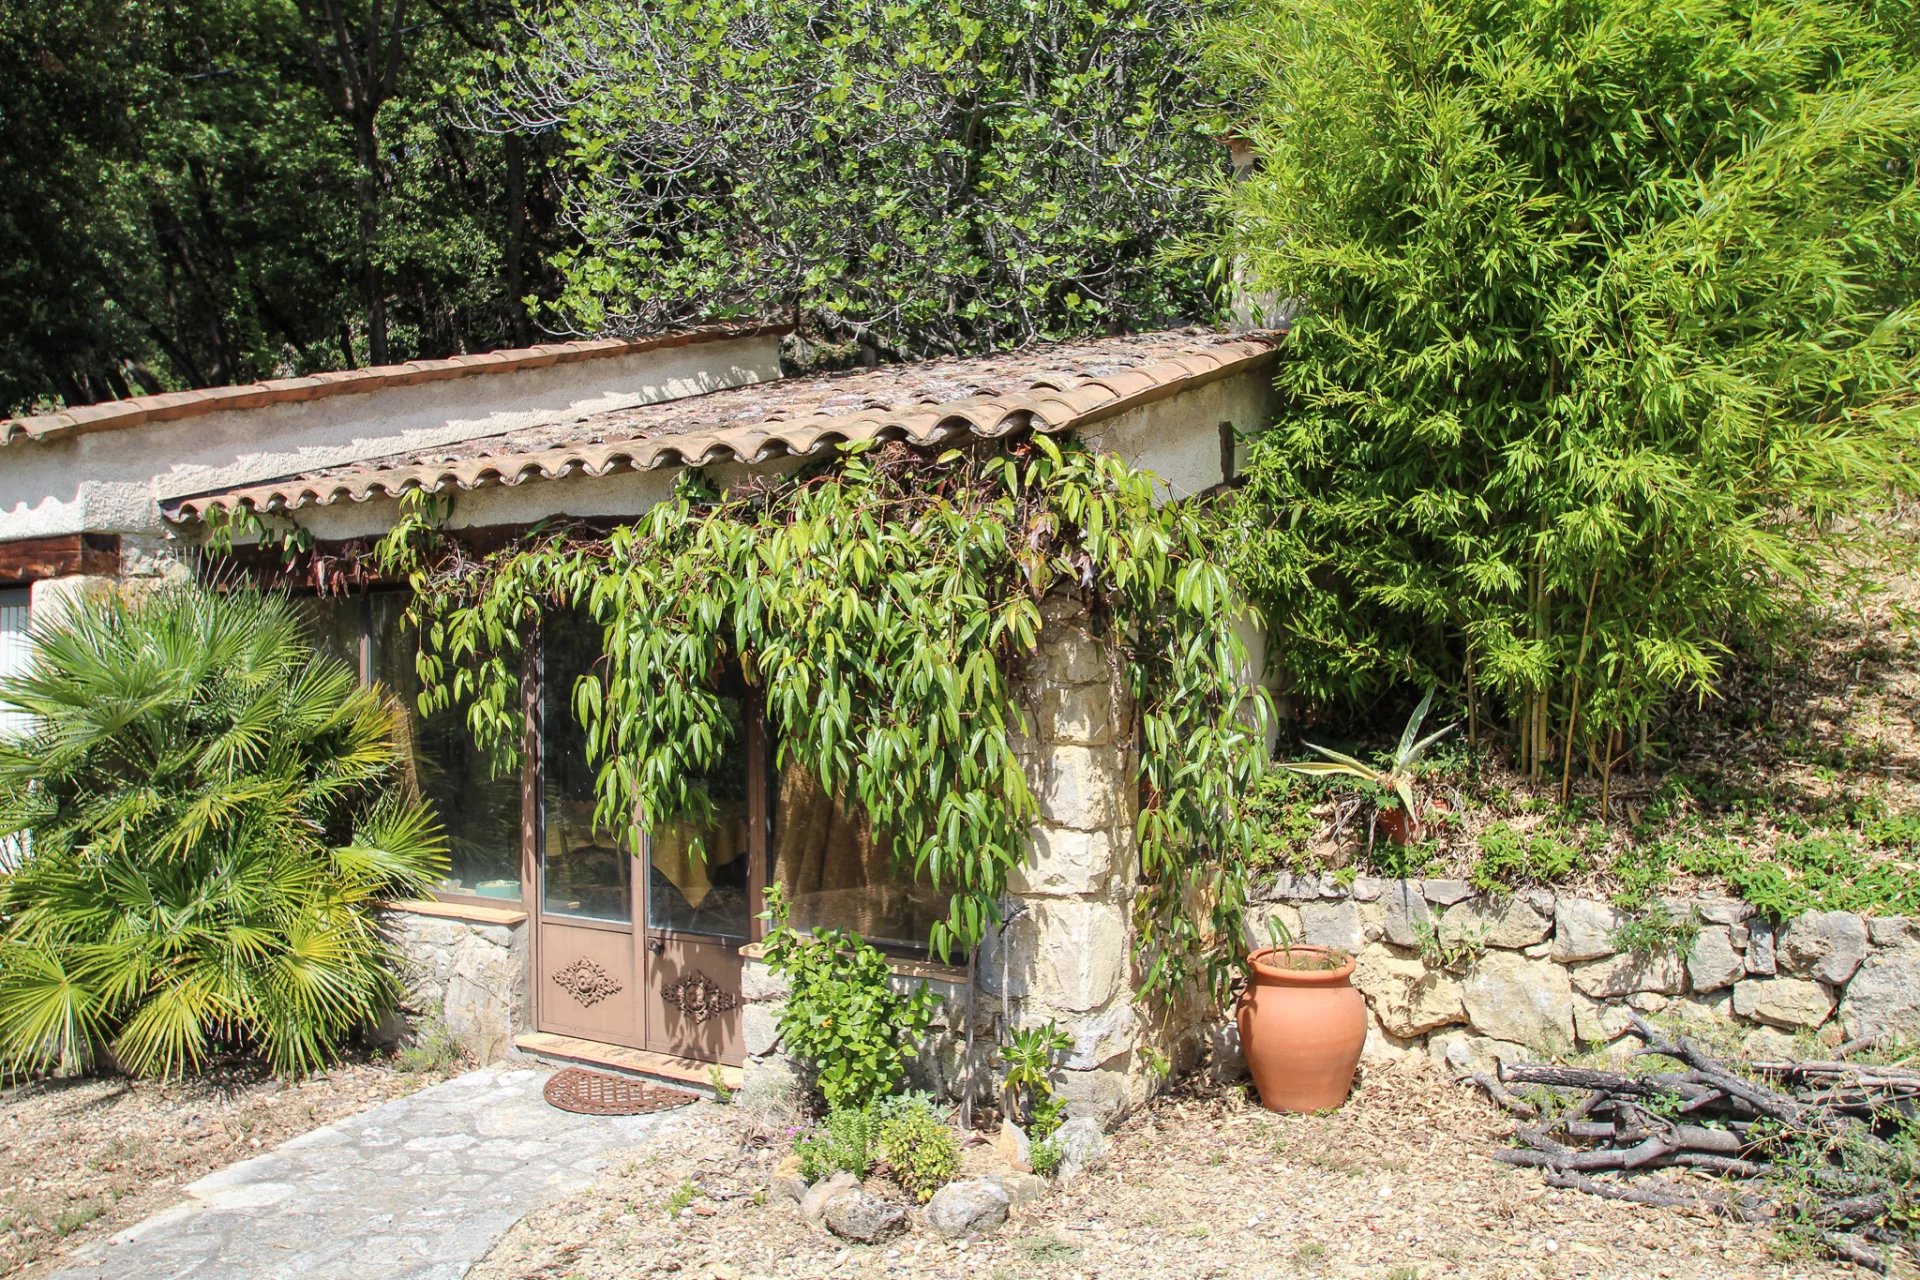 Fayence Provence: au calme belle propriété provençale sur 2 Ha avec vue panoramique